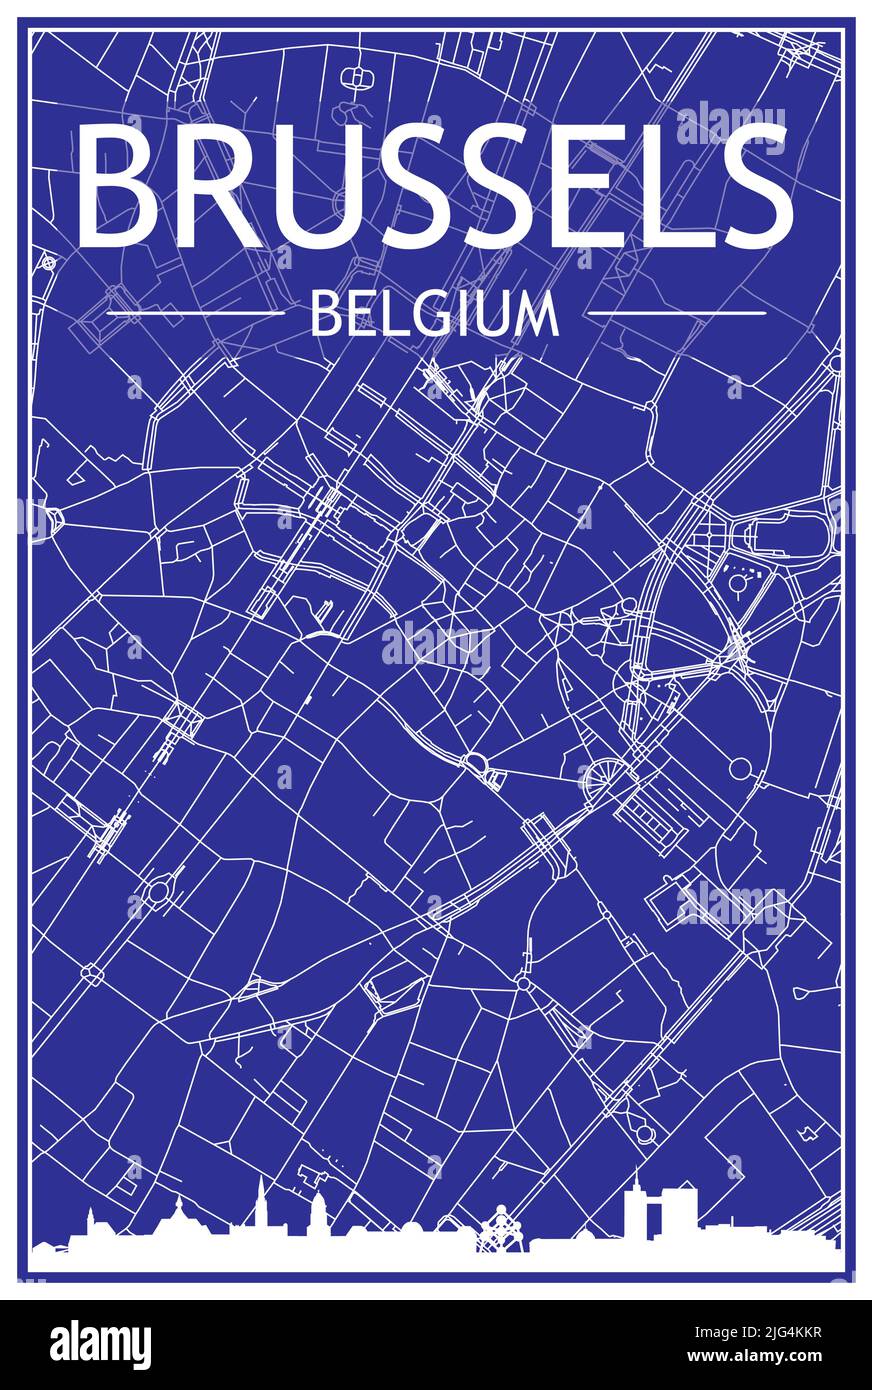 Stampa del disegno tecnico poster della città con skyline panoramico e rete di strade disegnate a mano su sfondo blu del centro di BRUXELLES, BELGIO Illustrazione Vettoriale